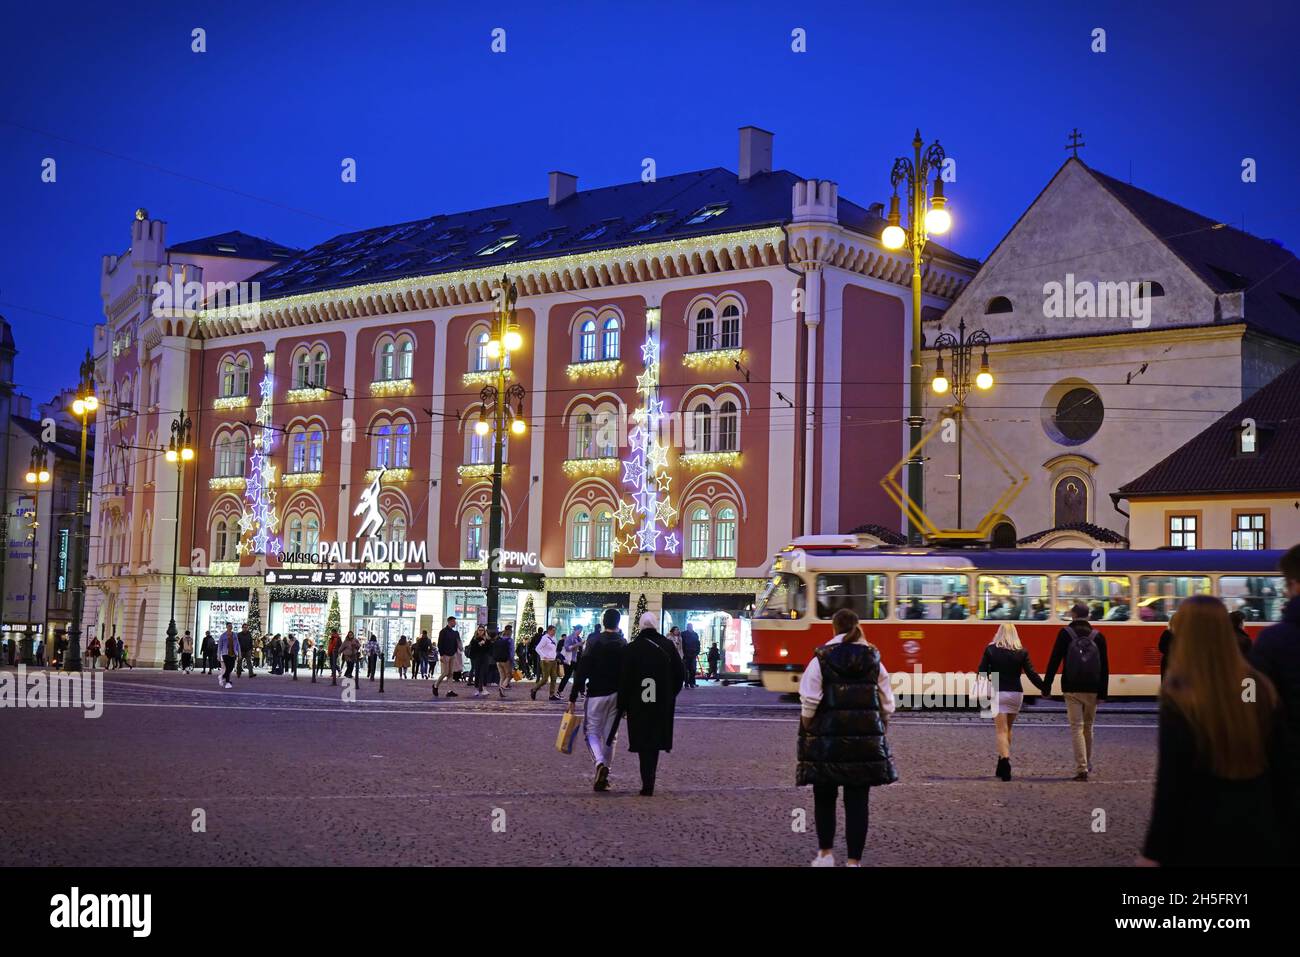 Vue extérieure du centre commercial Palladium.Ce centre commercial est l'un des plus grands de République tchèque.PRAGUE, RÉPUBLIQUE TCHÈQUE, OCTOBRE 2021 Banque D'Images